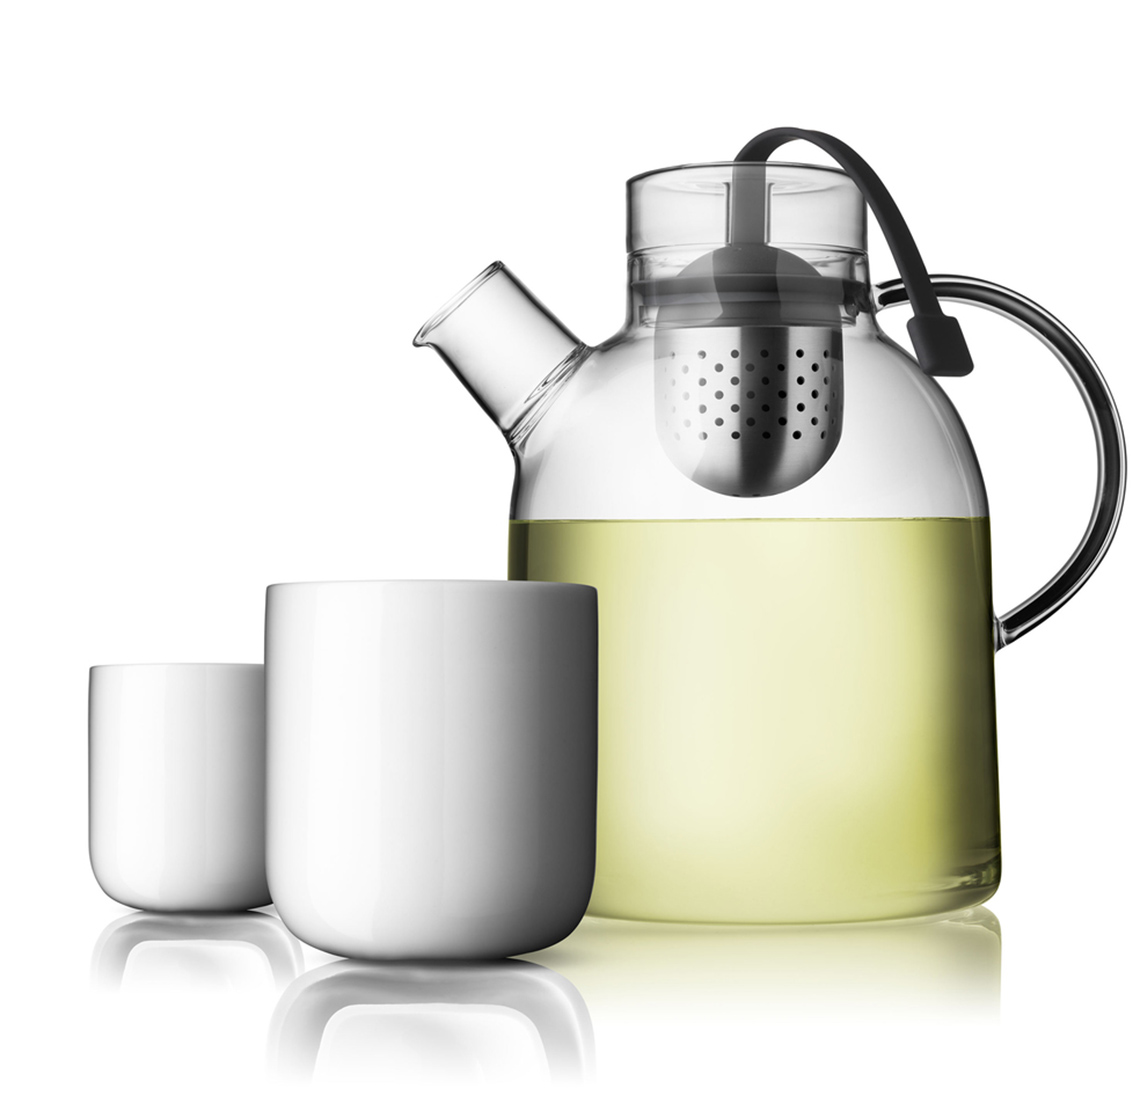 Szklany zaparzacz do herbaty, marki MENU, stworzony przez Grupę Norm